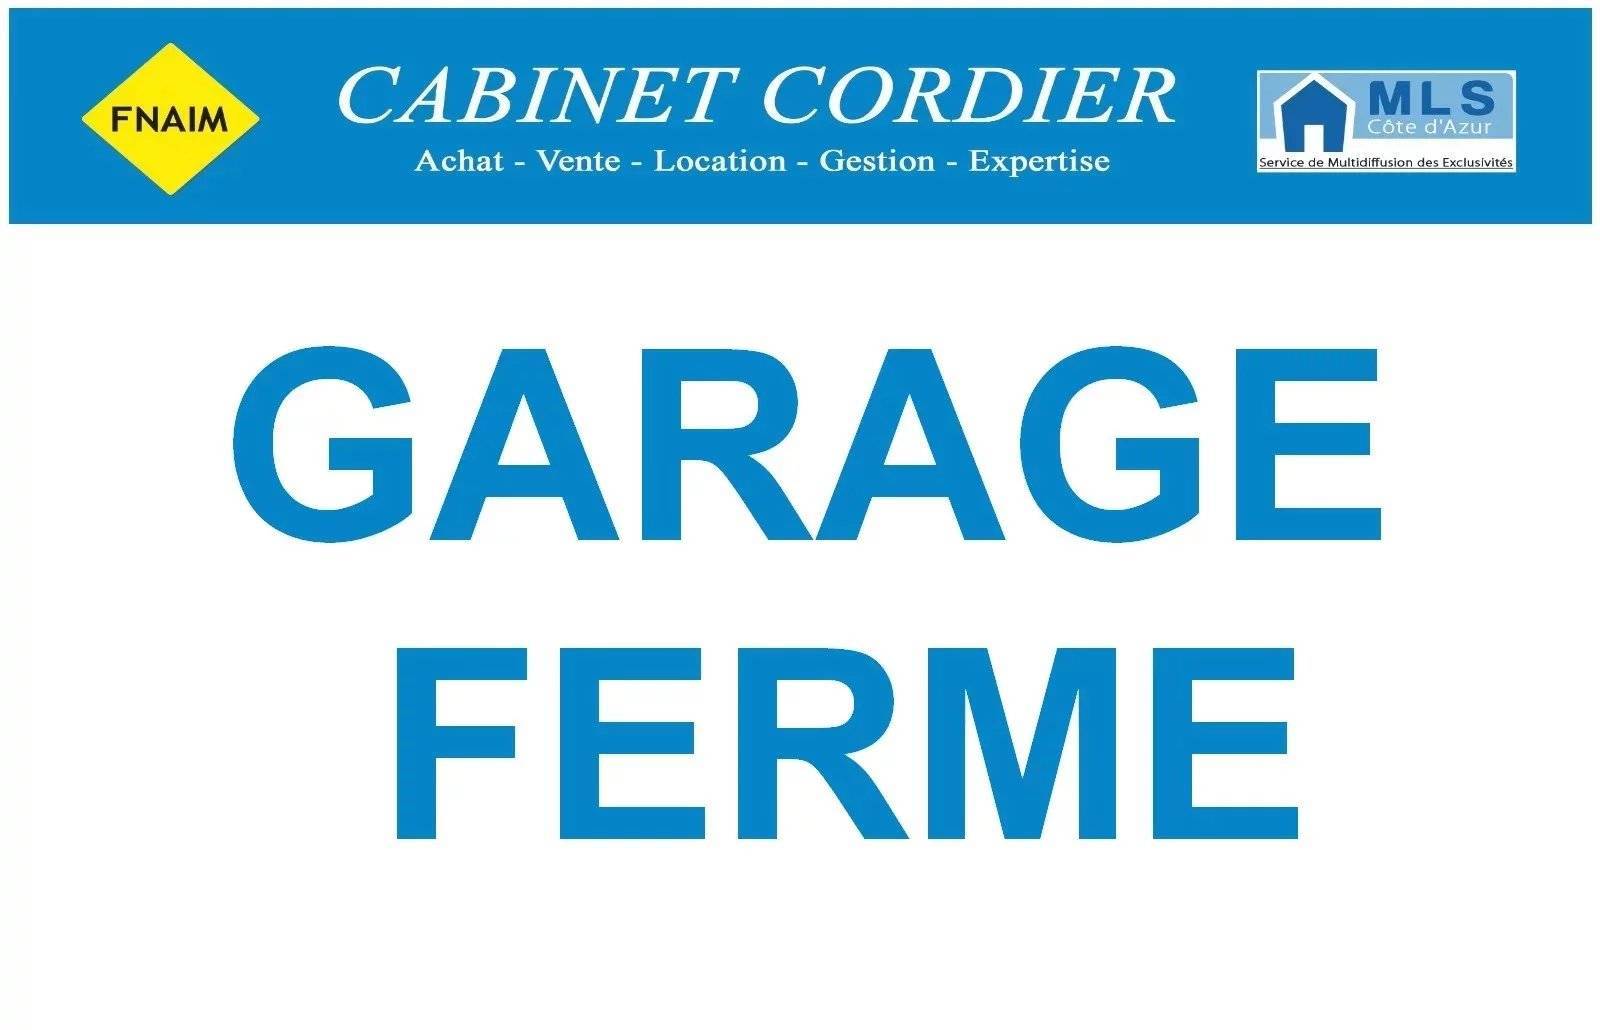 Vente Parking / Box à Nice (06000) - Cabinet Cordier